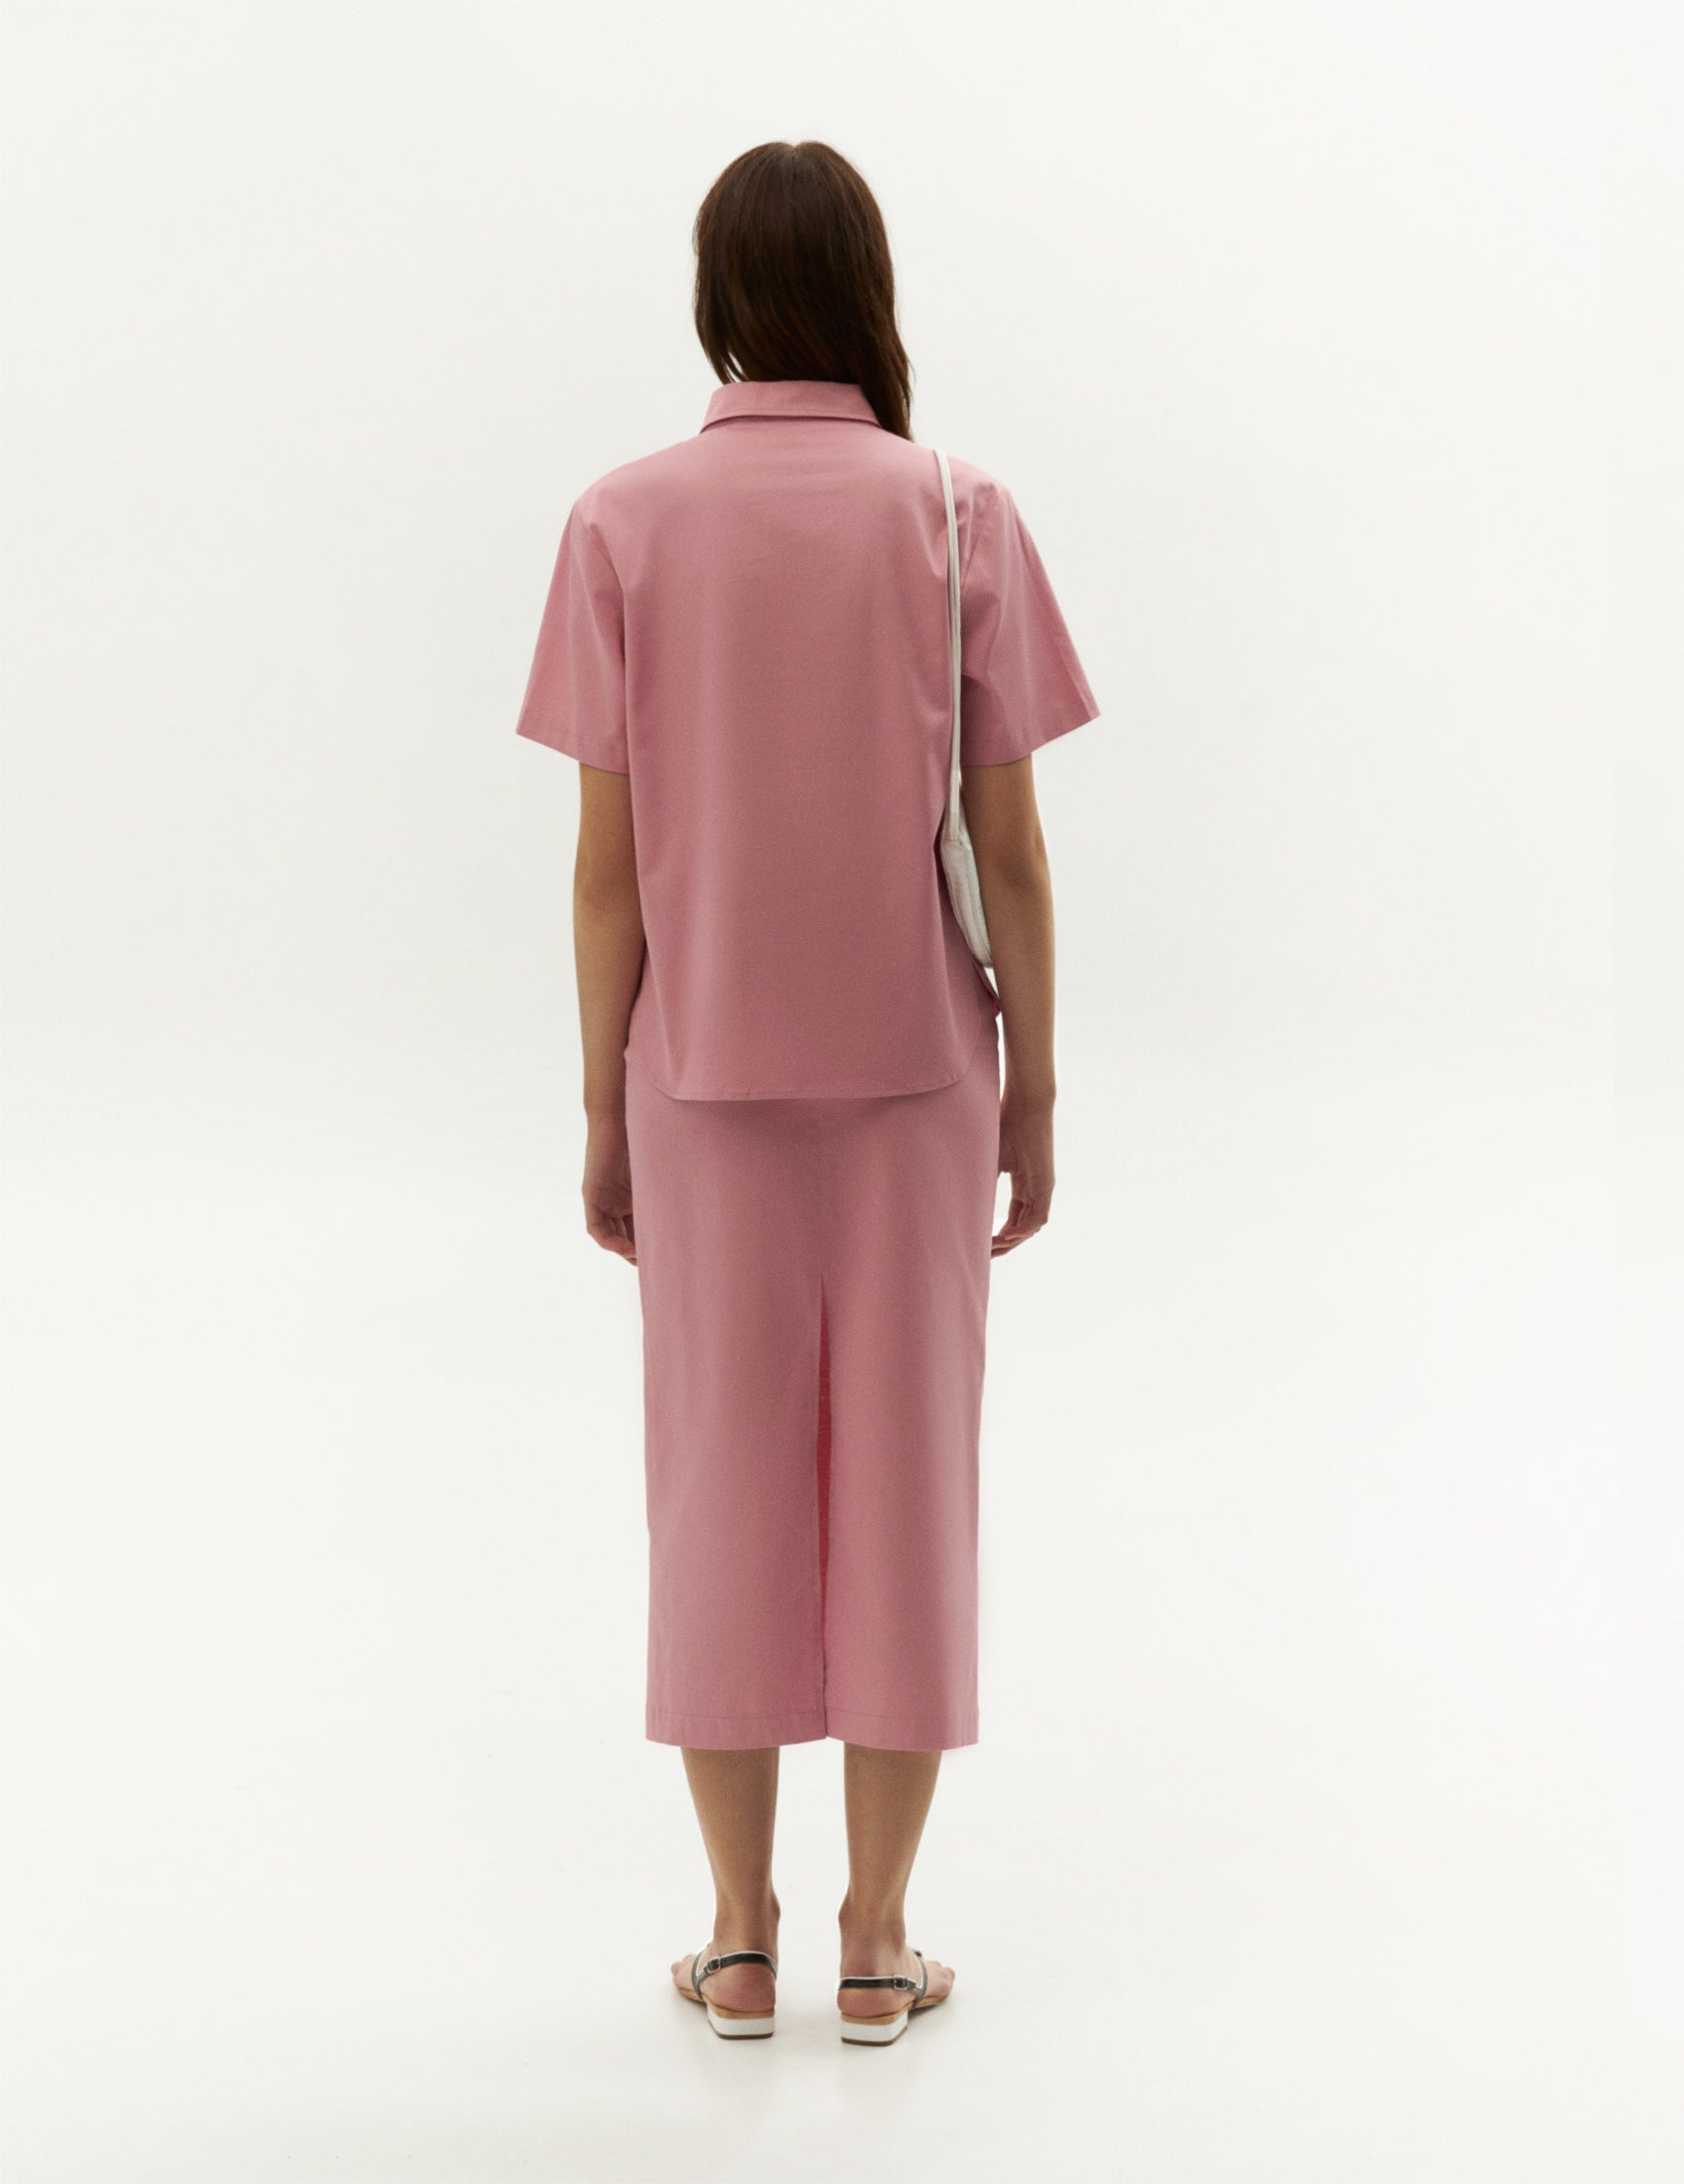 Fashion pink suit from FORMA brand, clothing online. Довга спідниця рожевого кольору із бавовни від бренду ФОРМА 